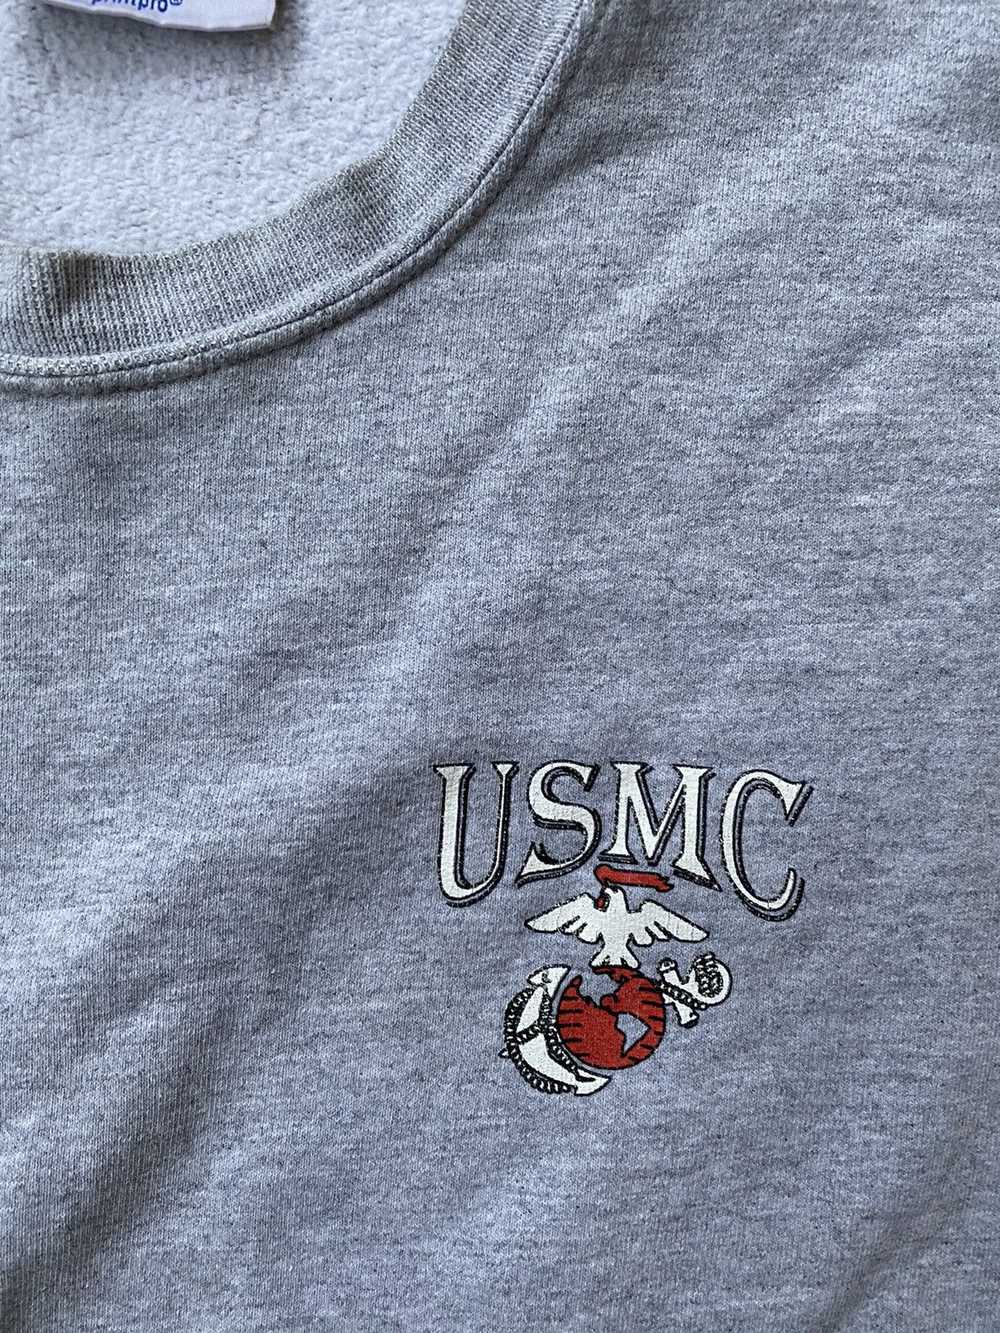 Military × Usmc × Vintage Vintage 90's USMC Milit… - image 3